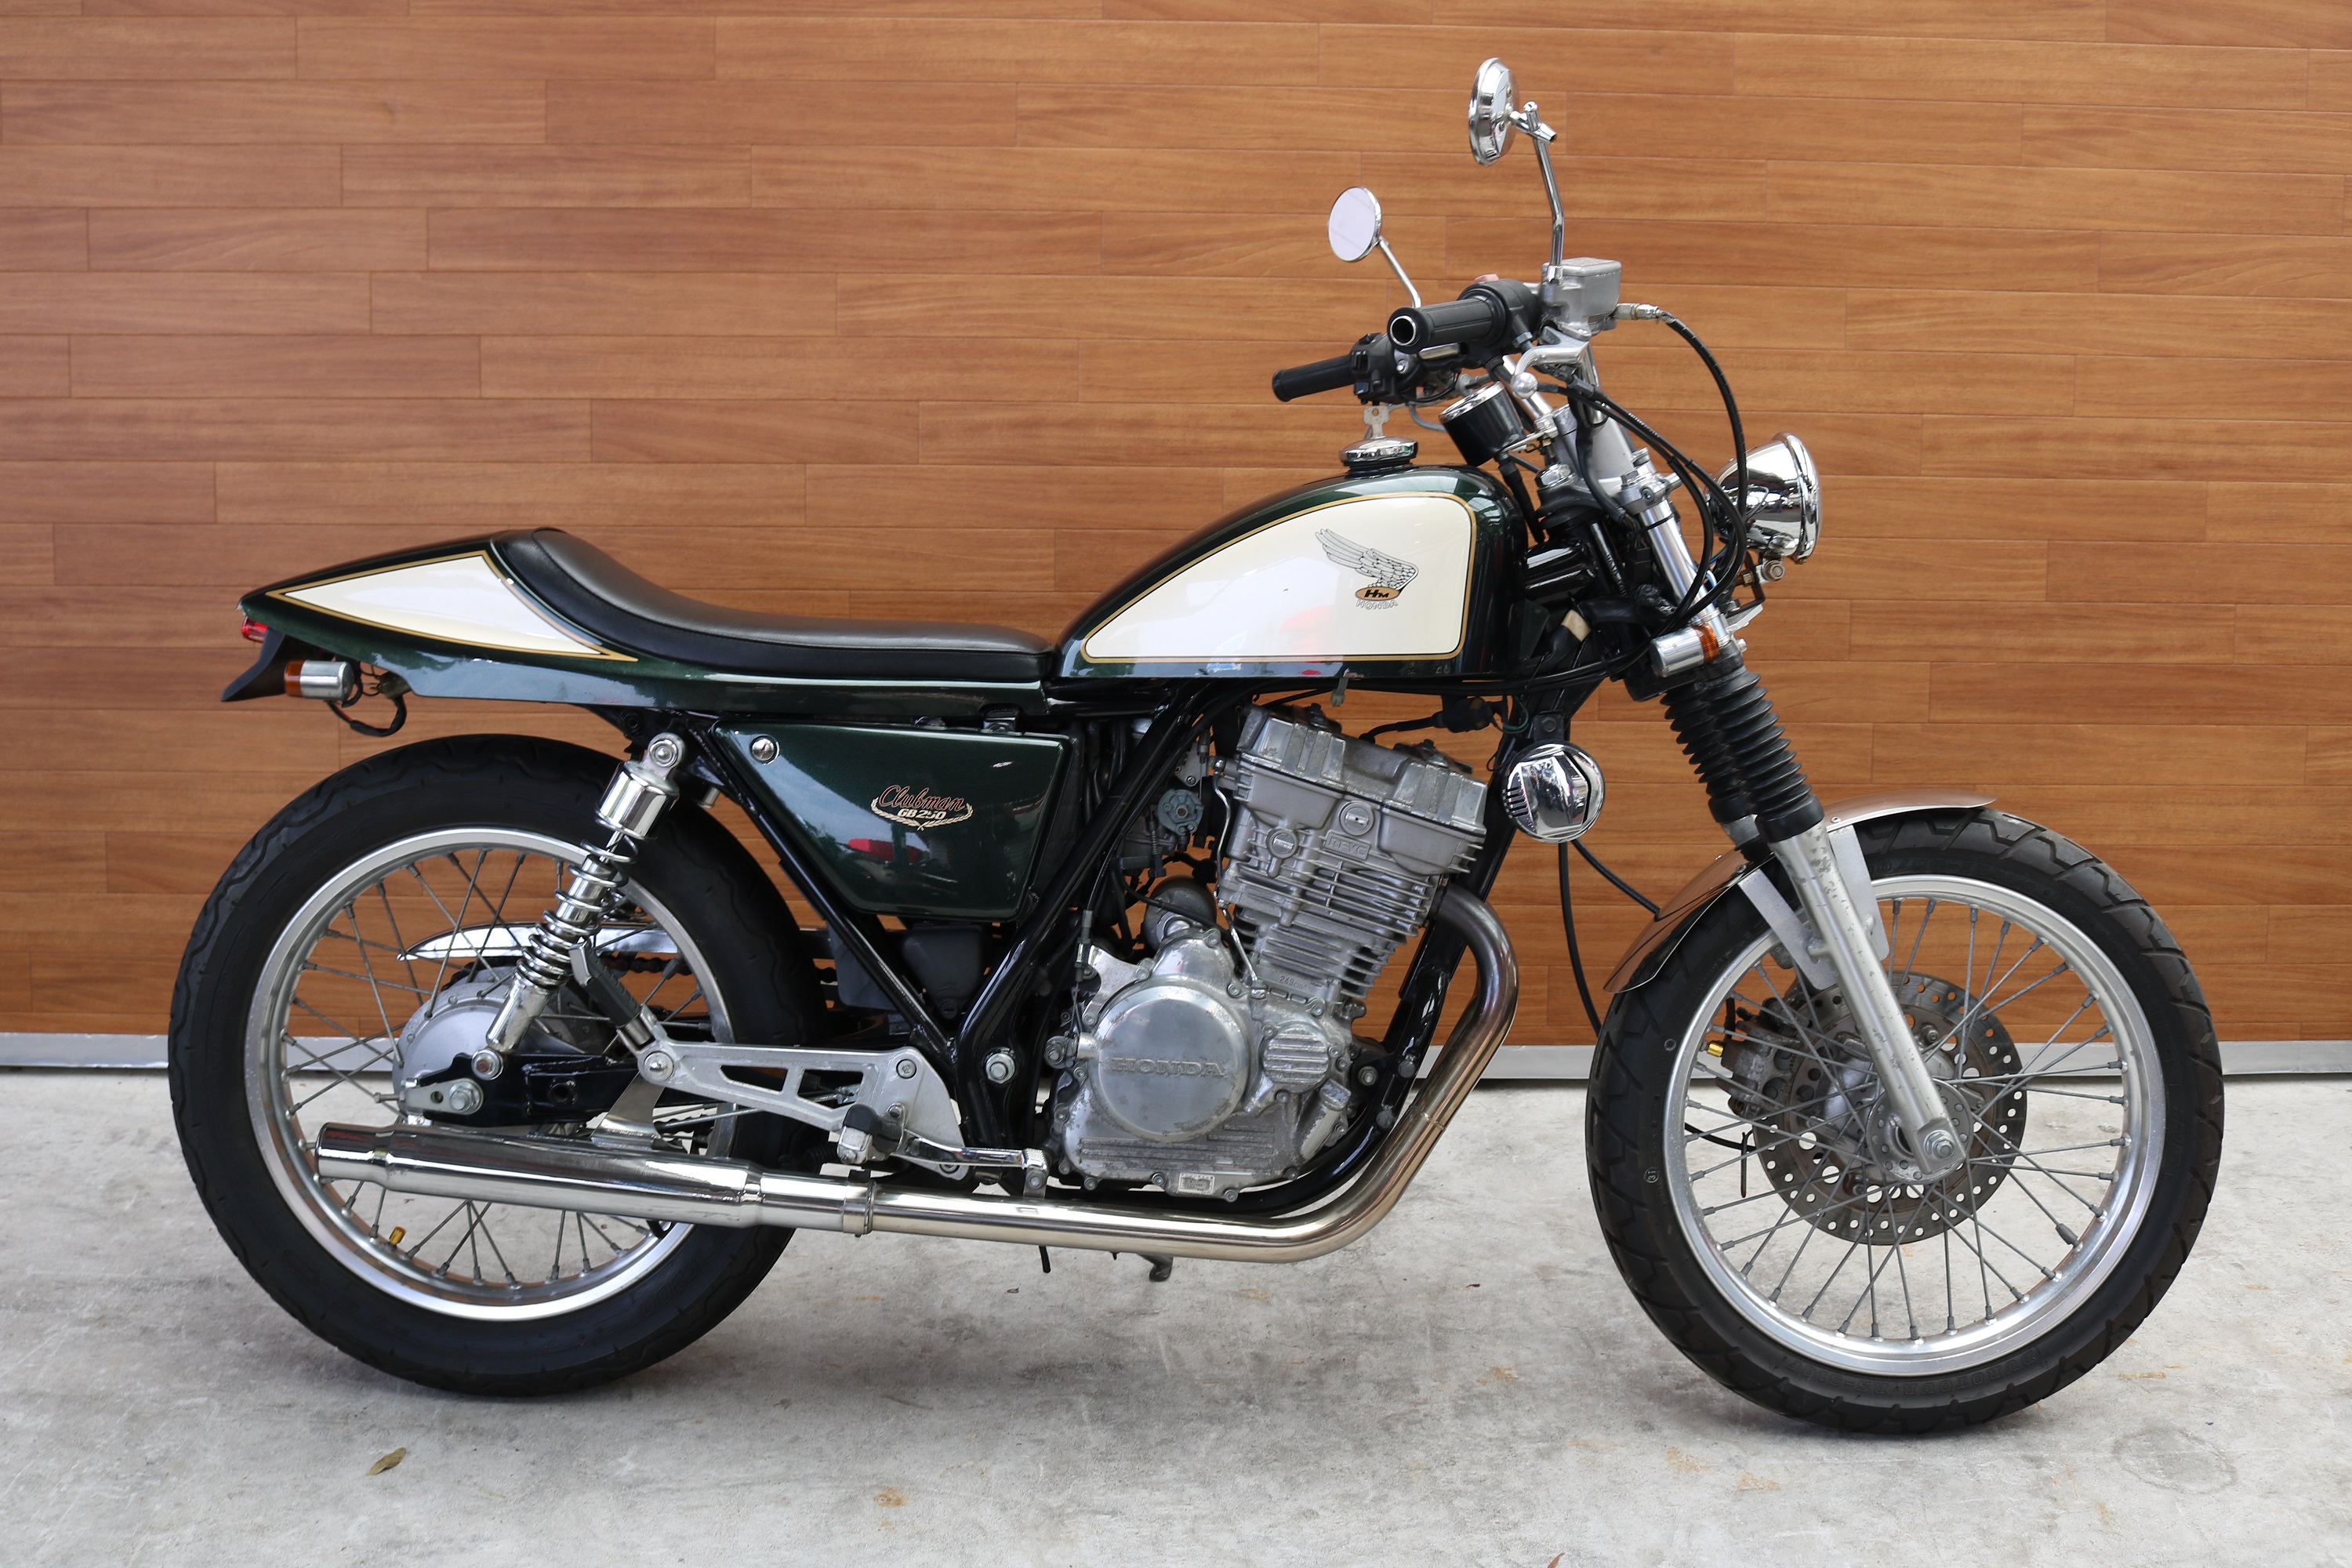 熊本中古車バイク情報 ホンダ Gb250 改 250 緑 熊本のバイクショップ アール バイクの新車 中古車販売や買取 レンタルバイク のことならおまかせください